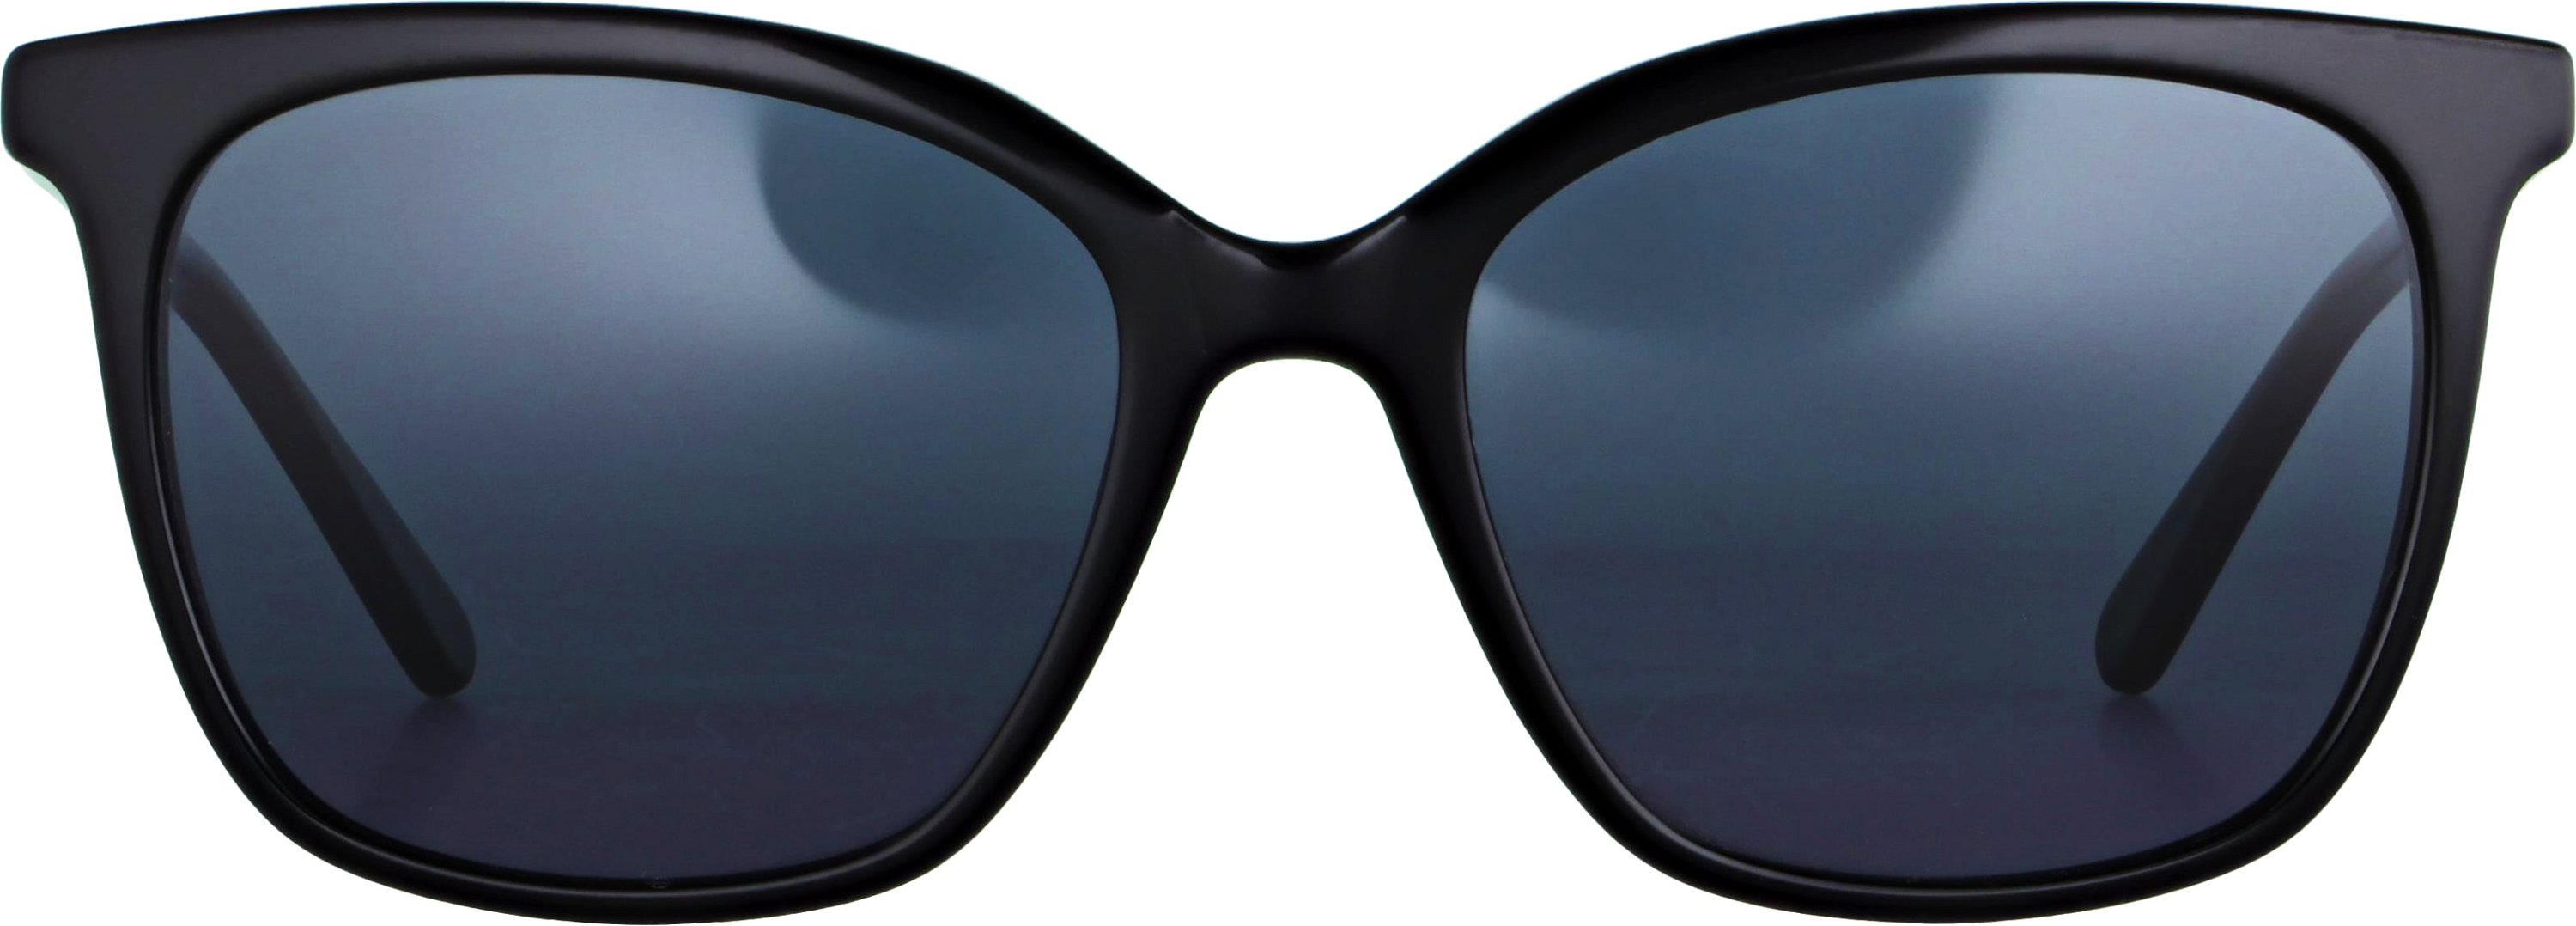 Das Bild zeigt die Sonnenbrille 141612 von der Marke Abele Optik in schwarz.